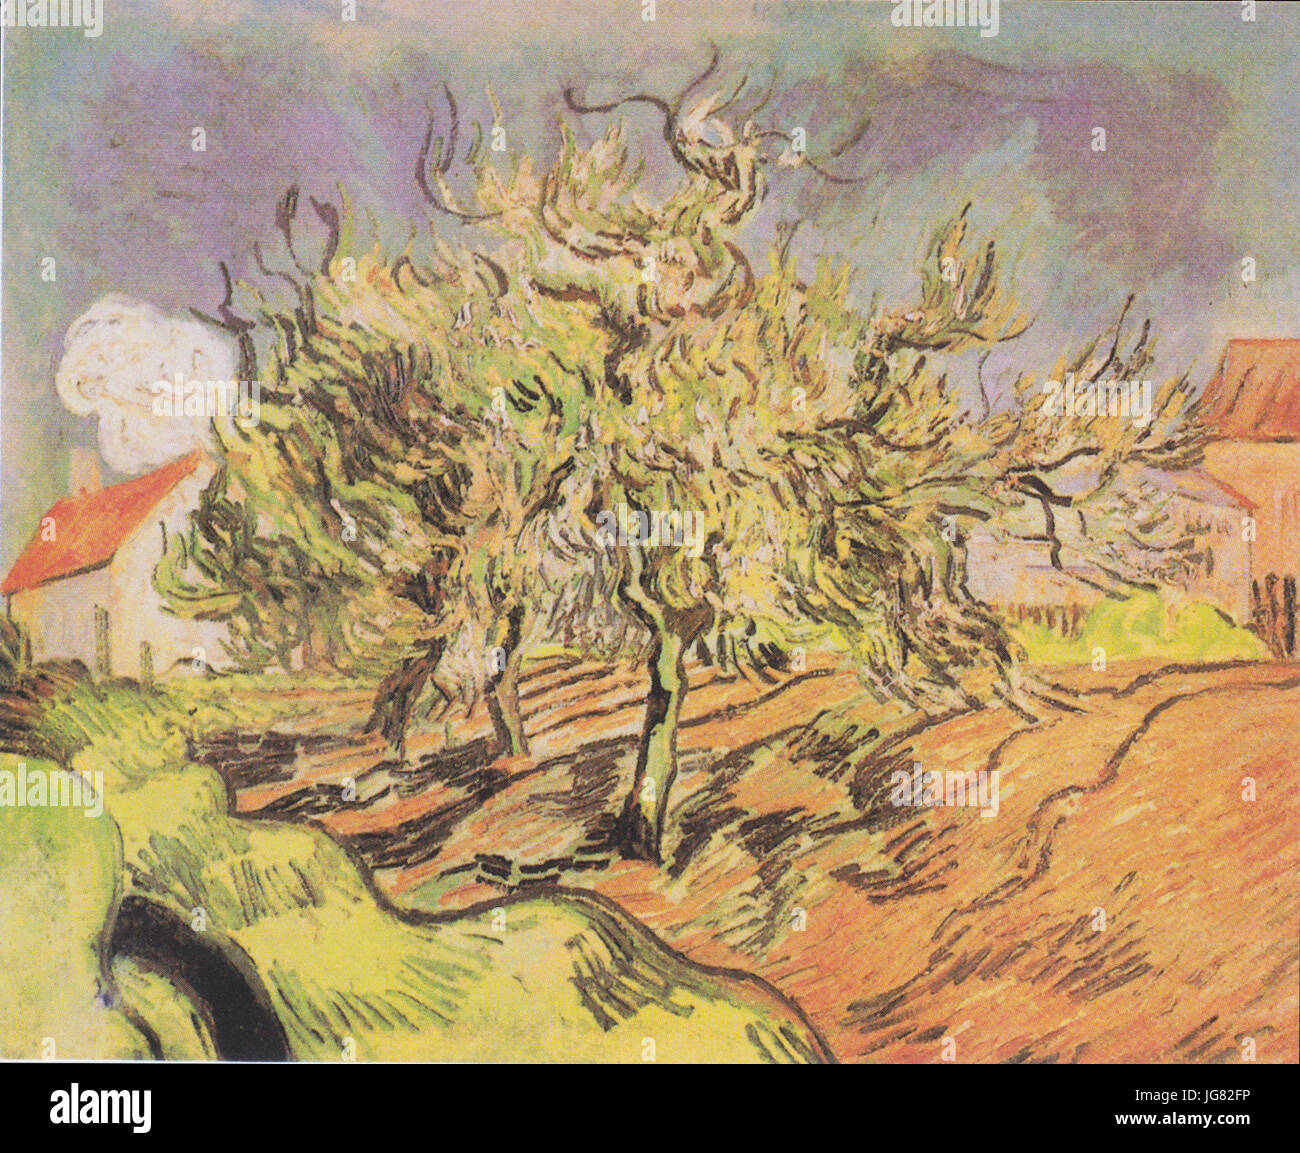 Van Gogh - Landschaft mit drei Bäumen und Häuschen Stock Photo